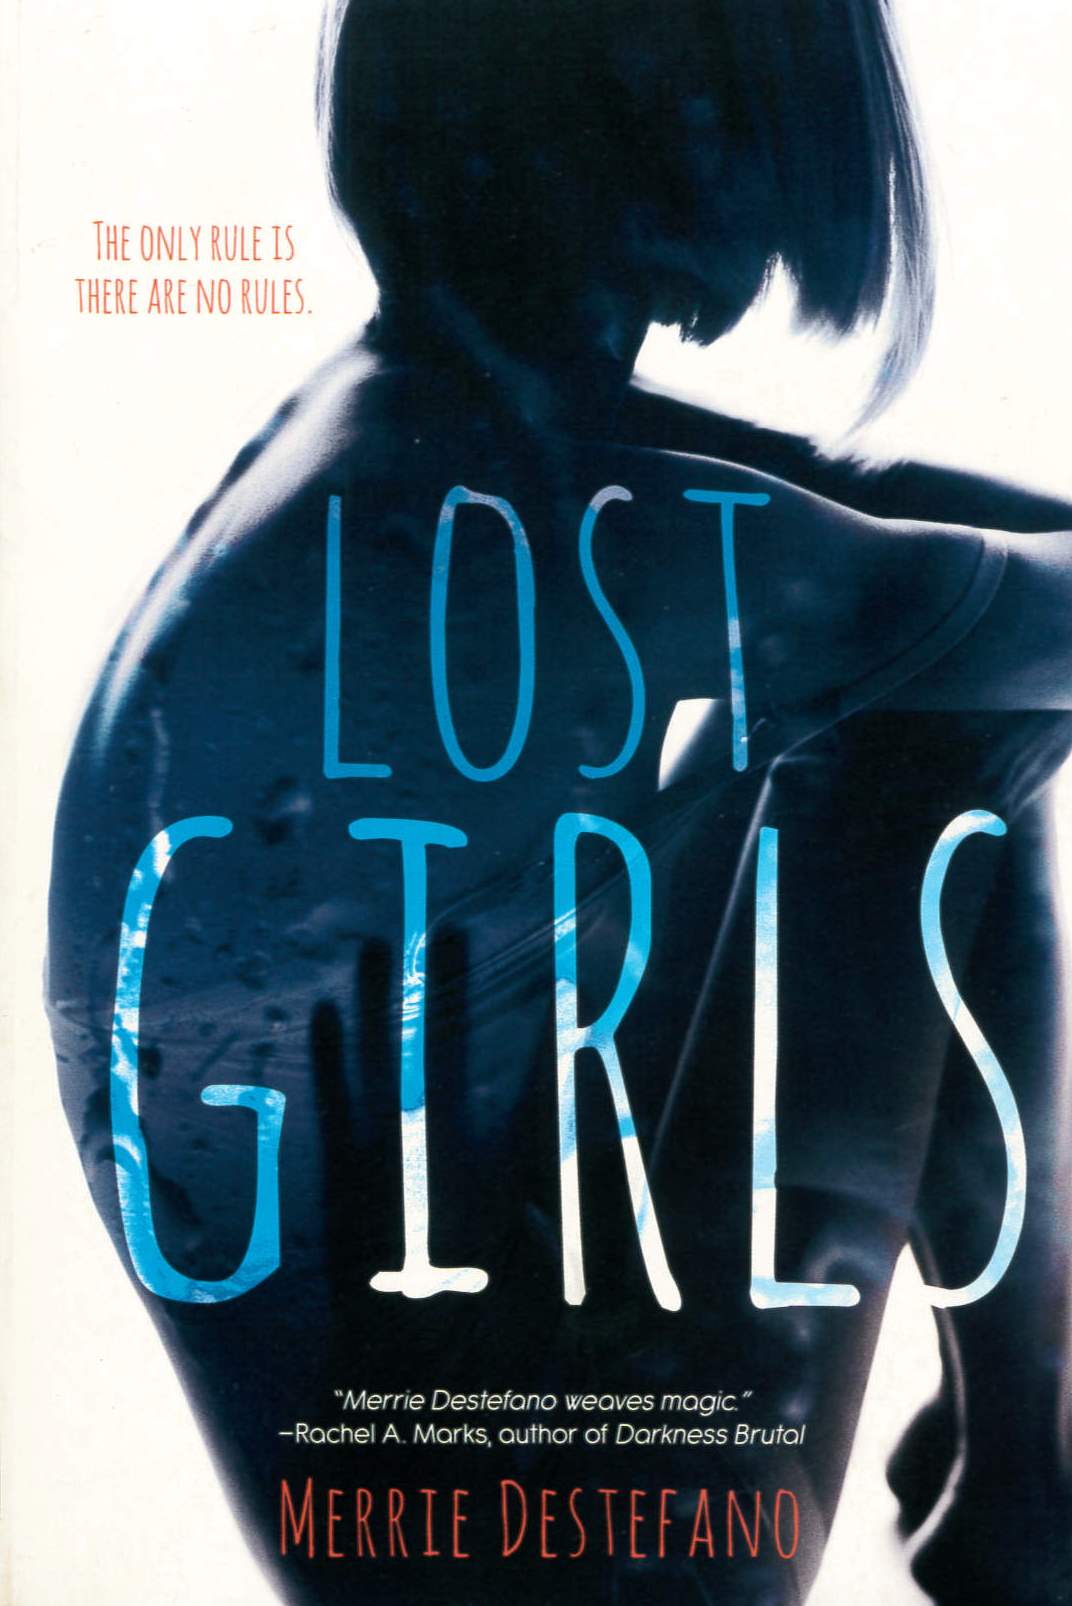 Lost girls /